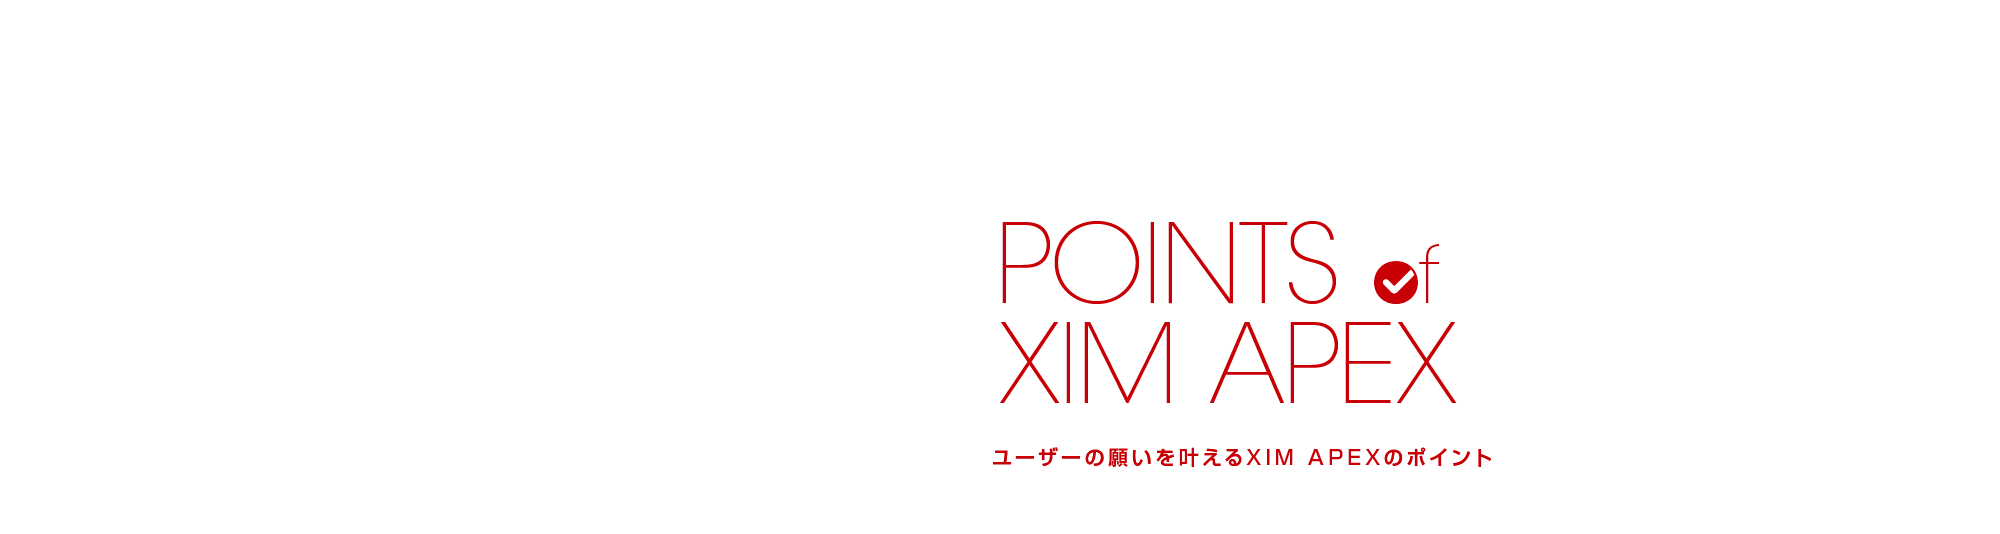 ユーザーの願いを叶えるXIM APEXのポイント